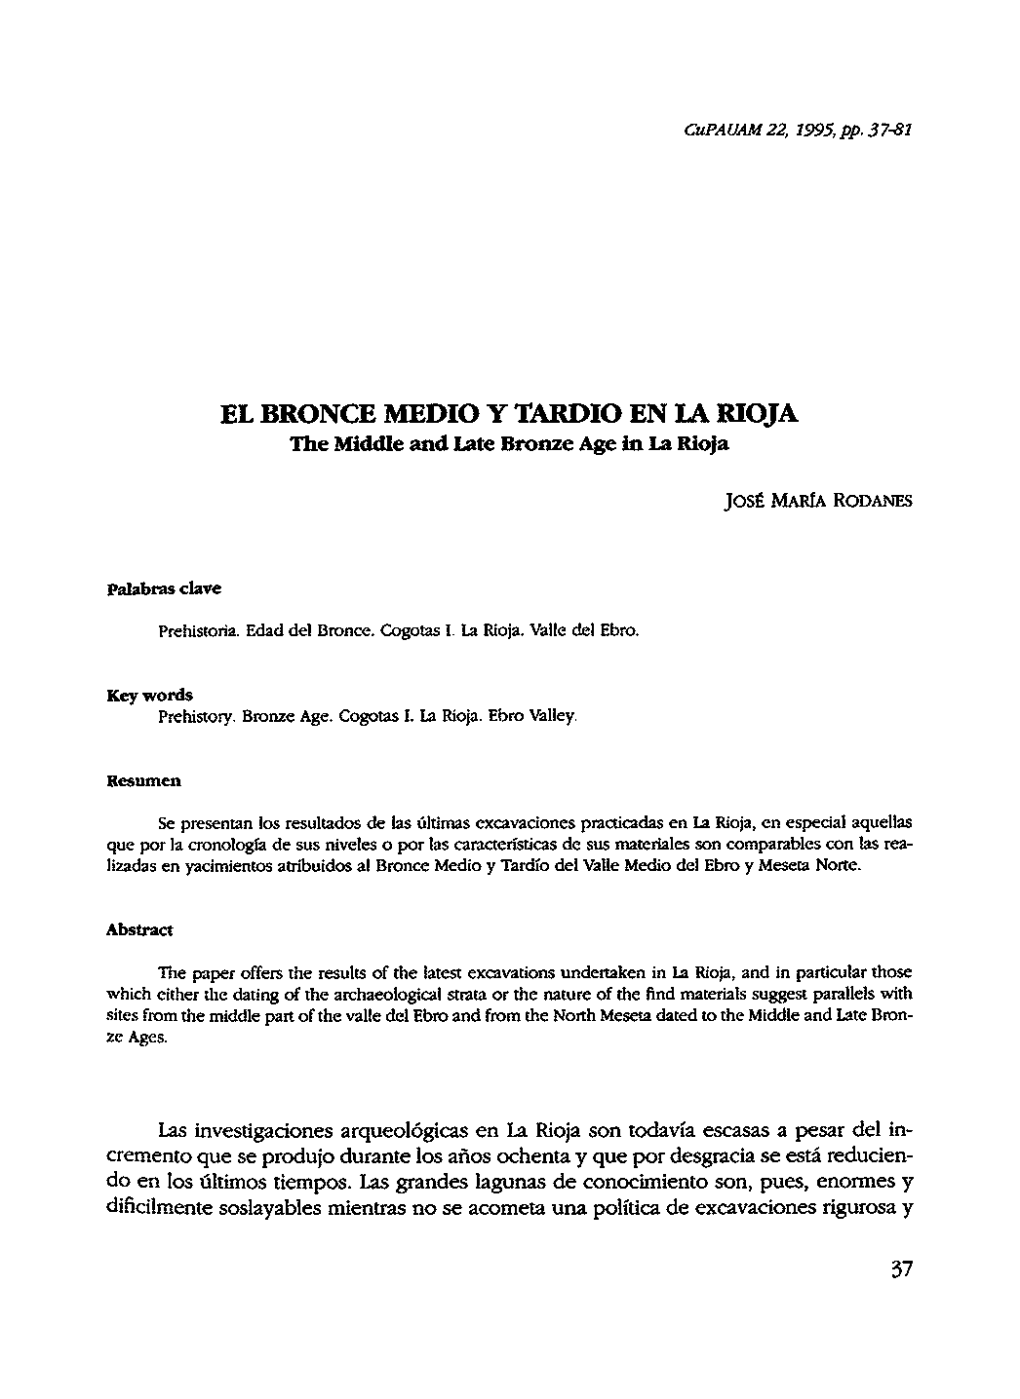 EL BRONCE MEDIO Y TARDIO EN LA RIOJA the Middle and Late Bronze Age in La Rioja